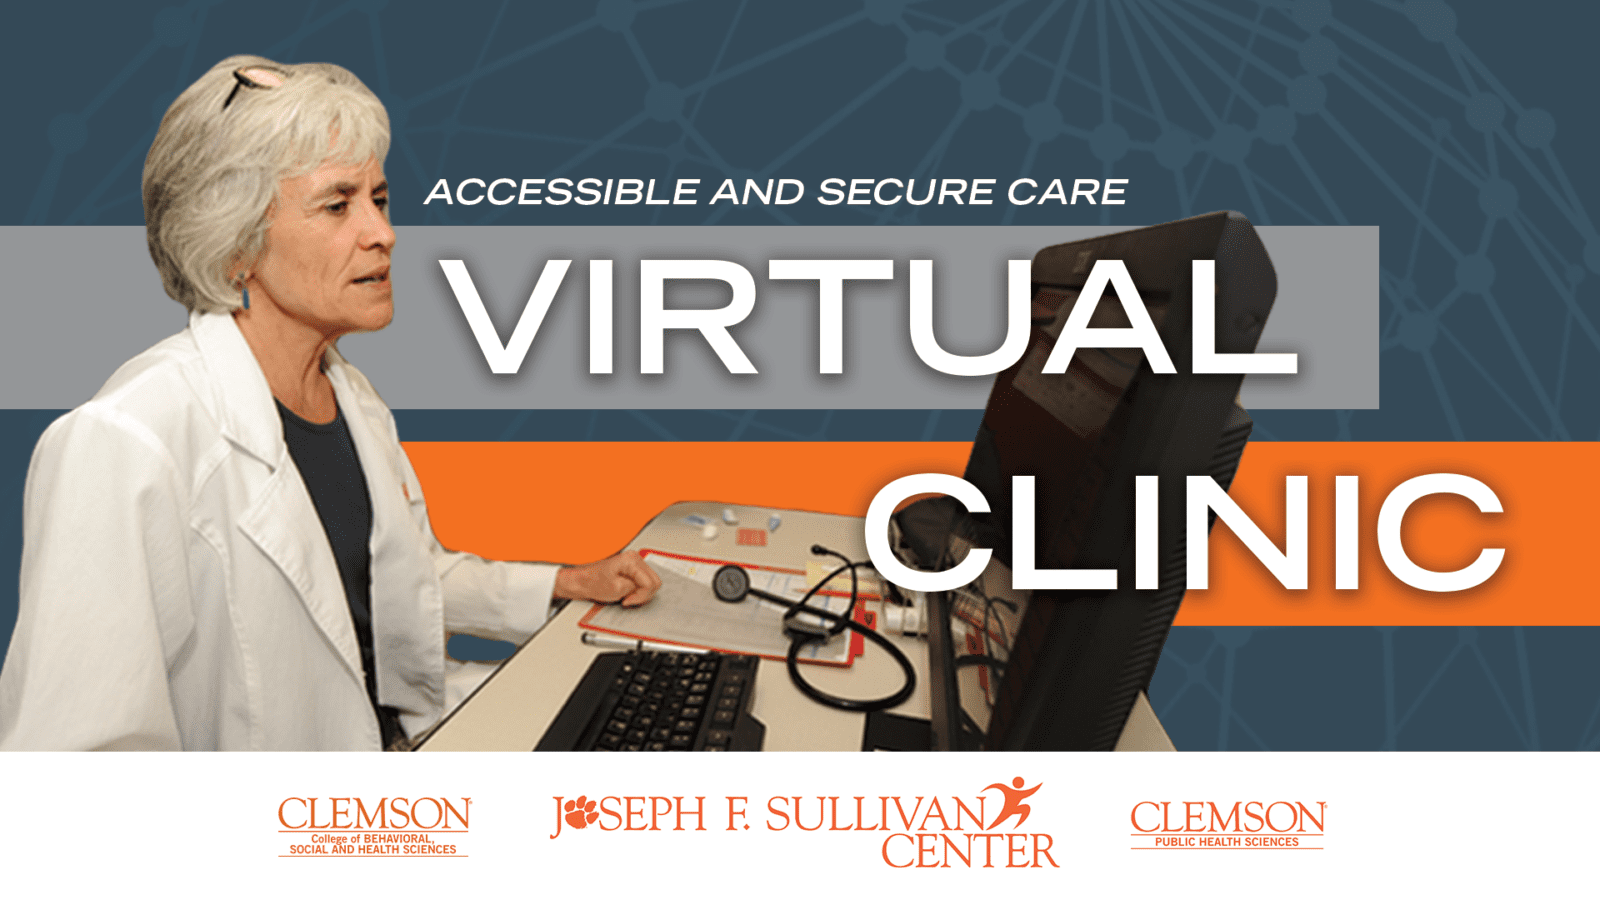 Joseph F. Sullivan Center Virtual Clinic